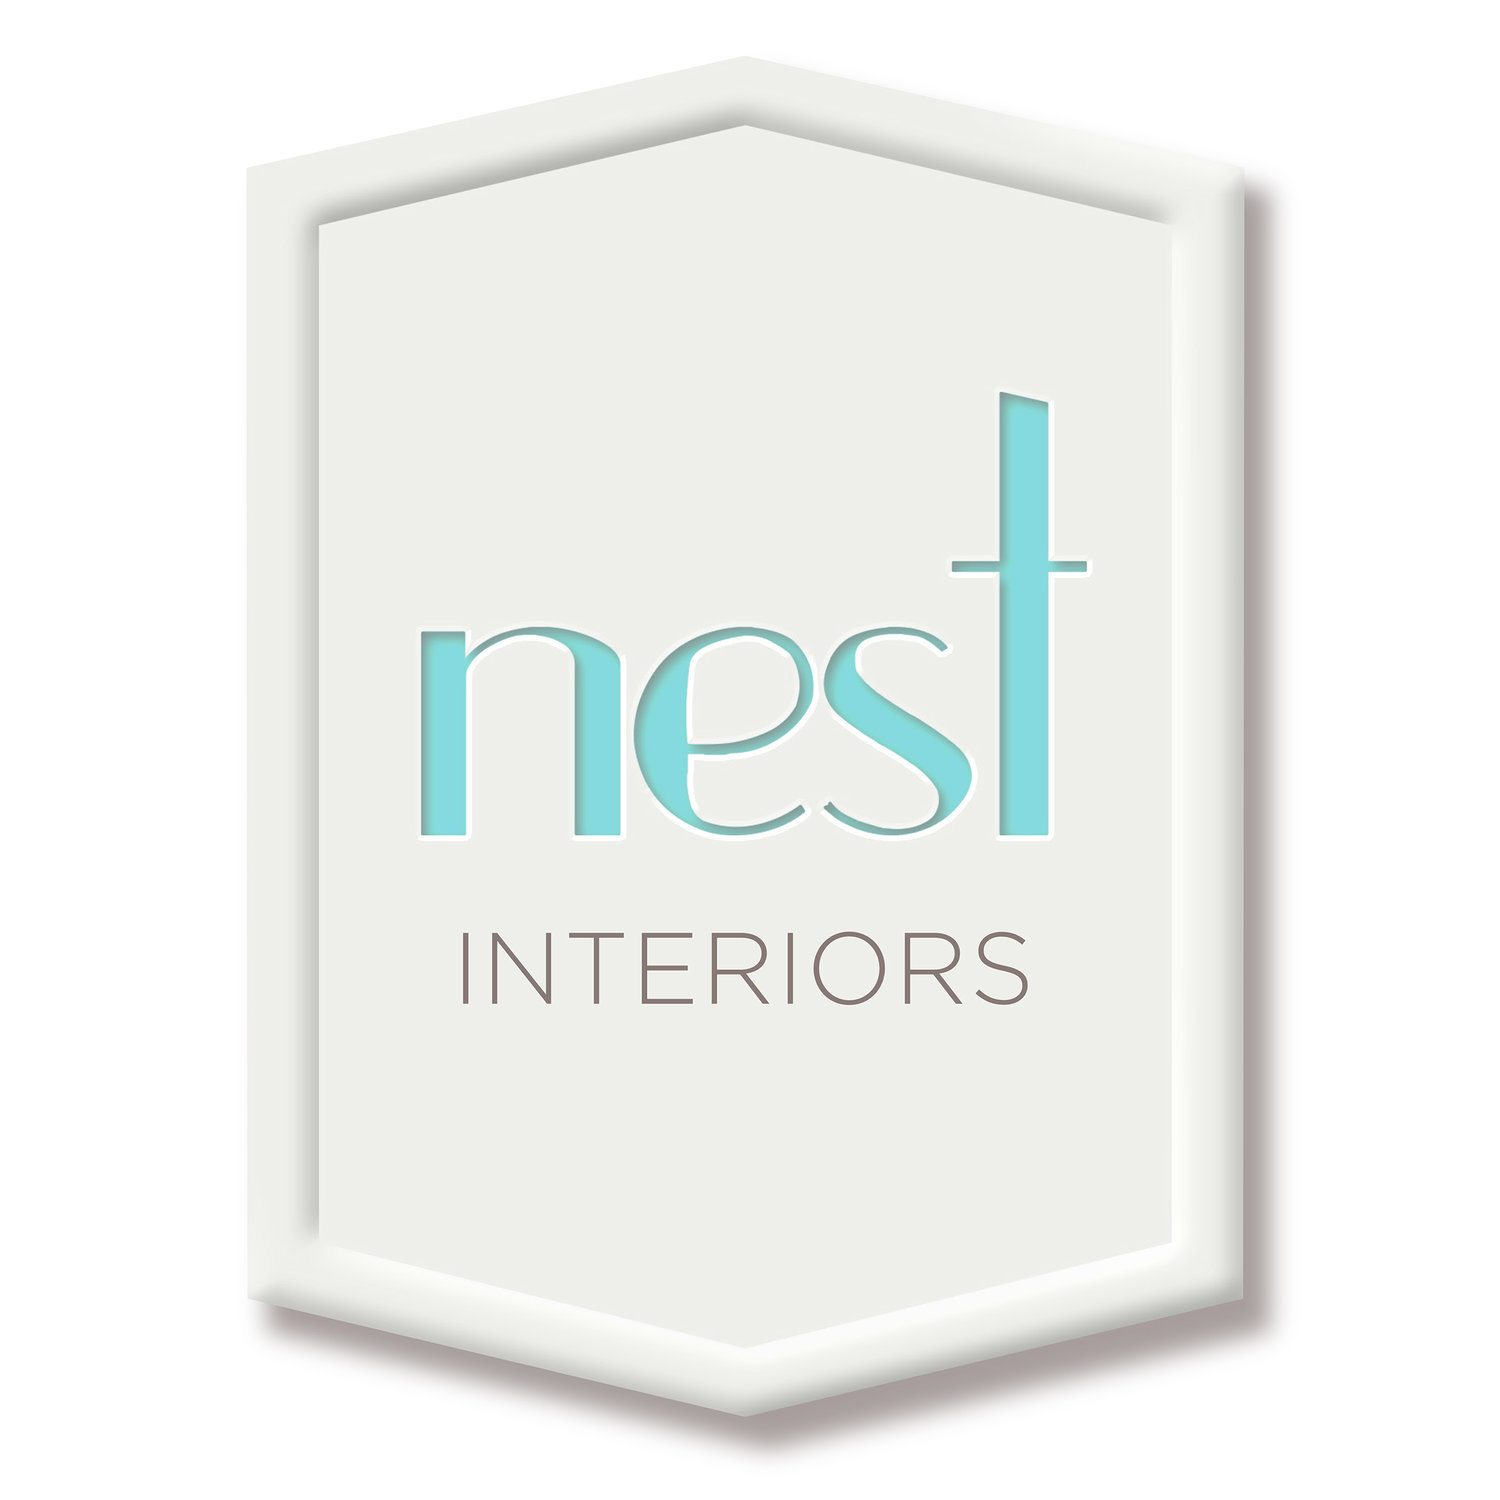 Nest Interiors Design